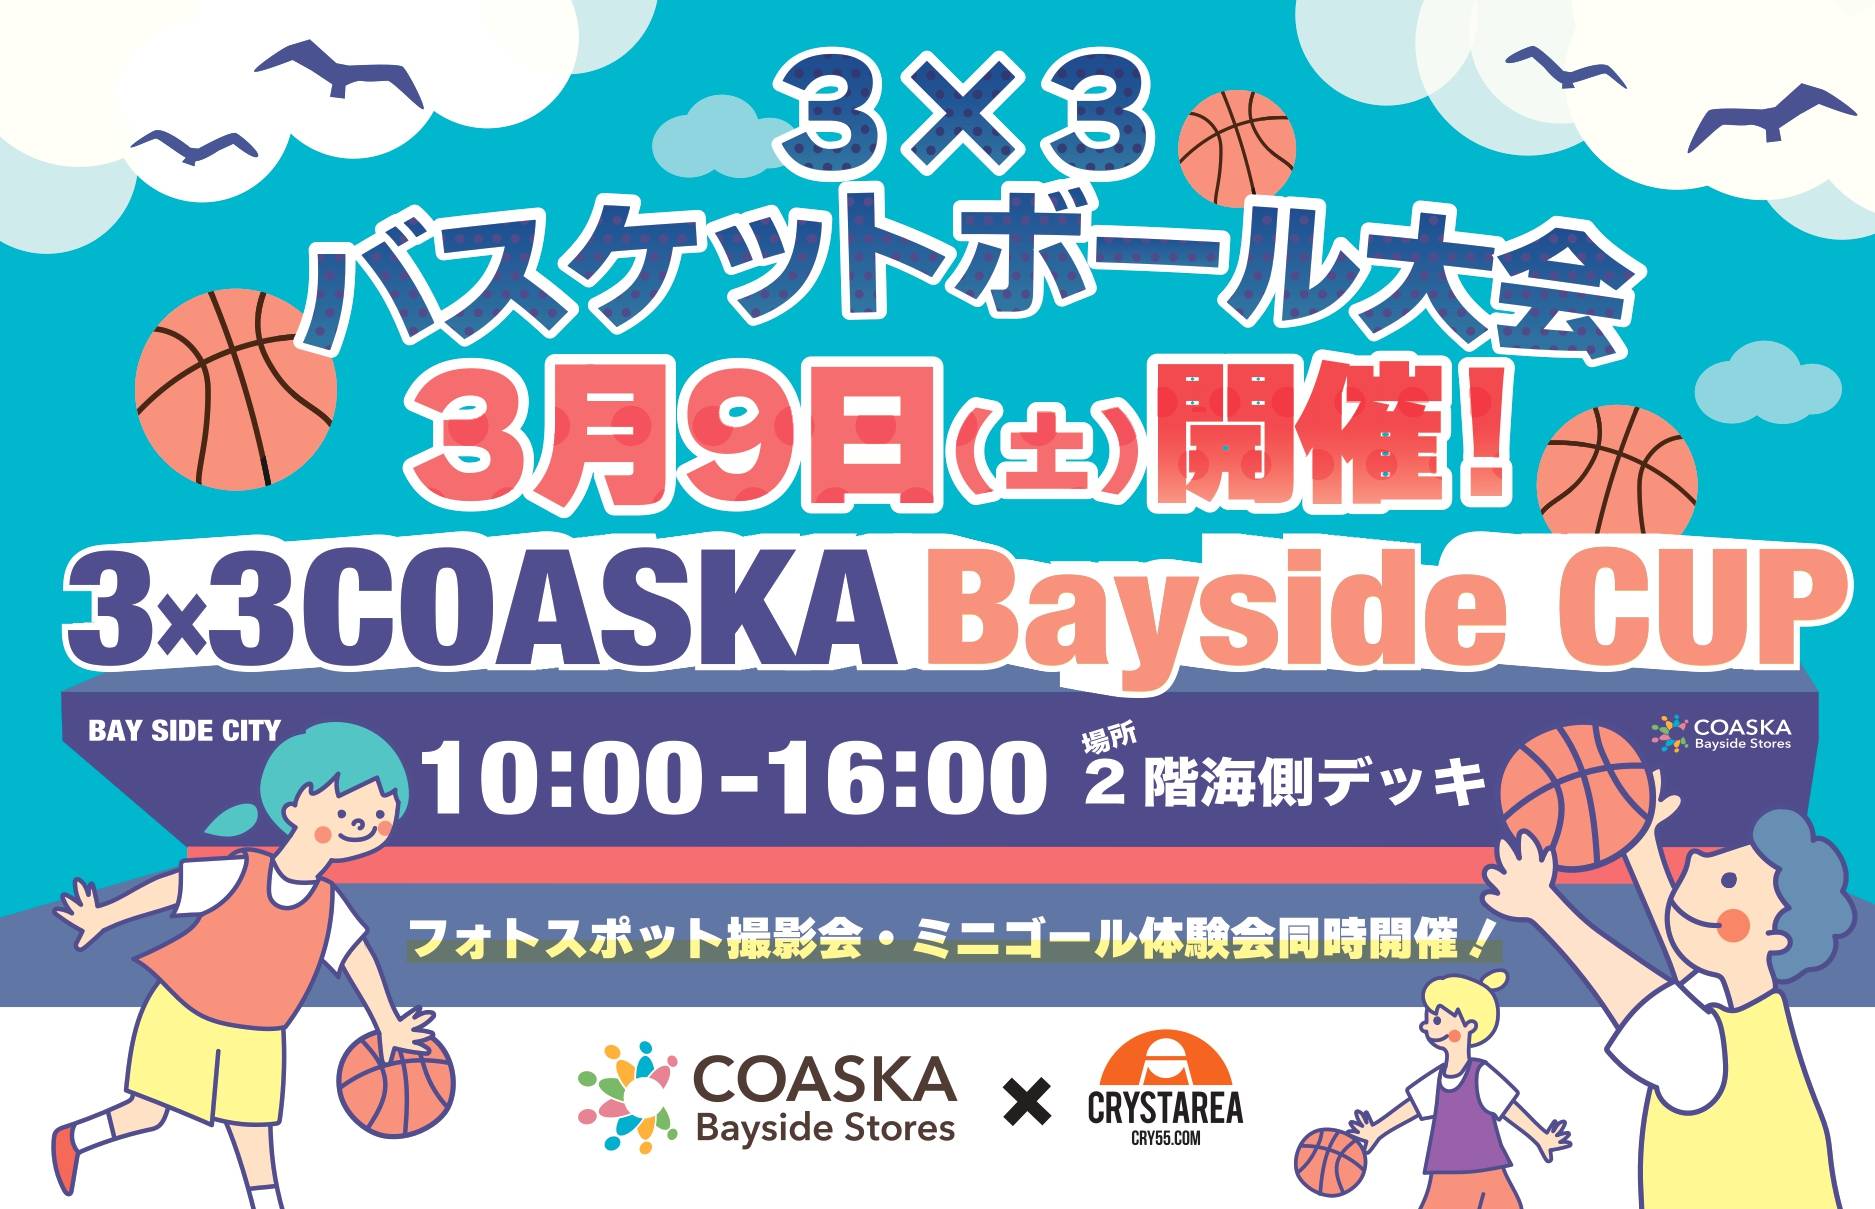 【バスケット】第2回 3×3 COASKA Bayside CUP